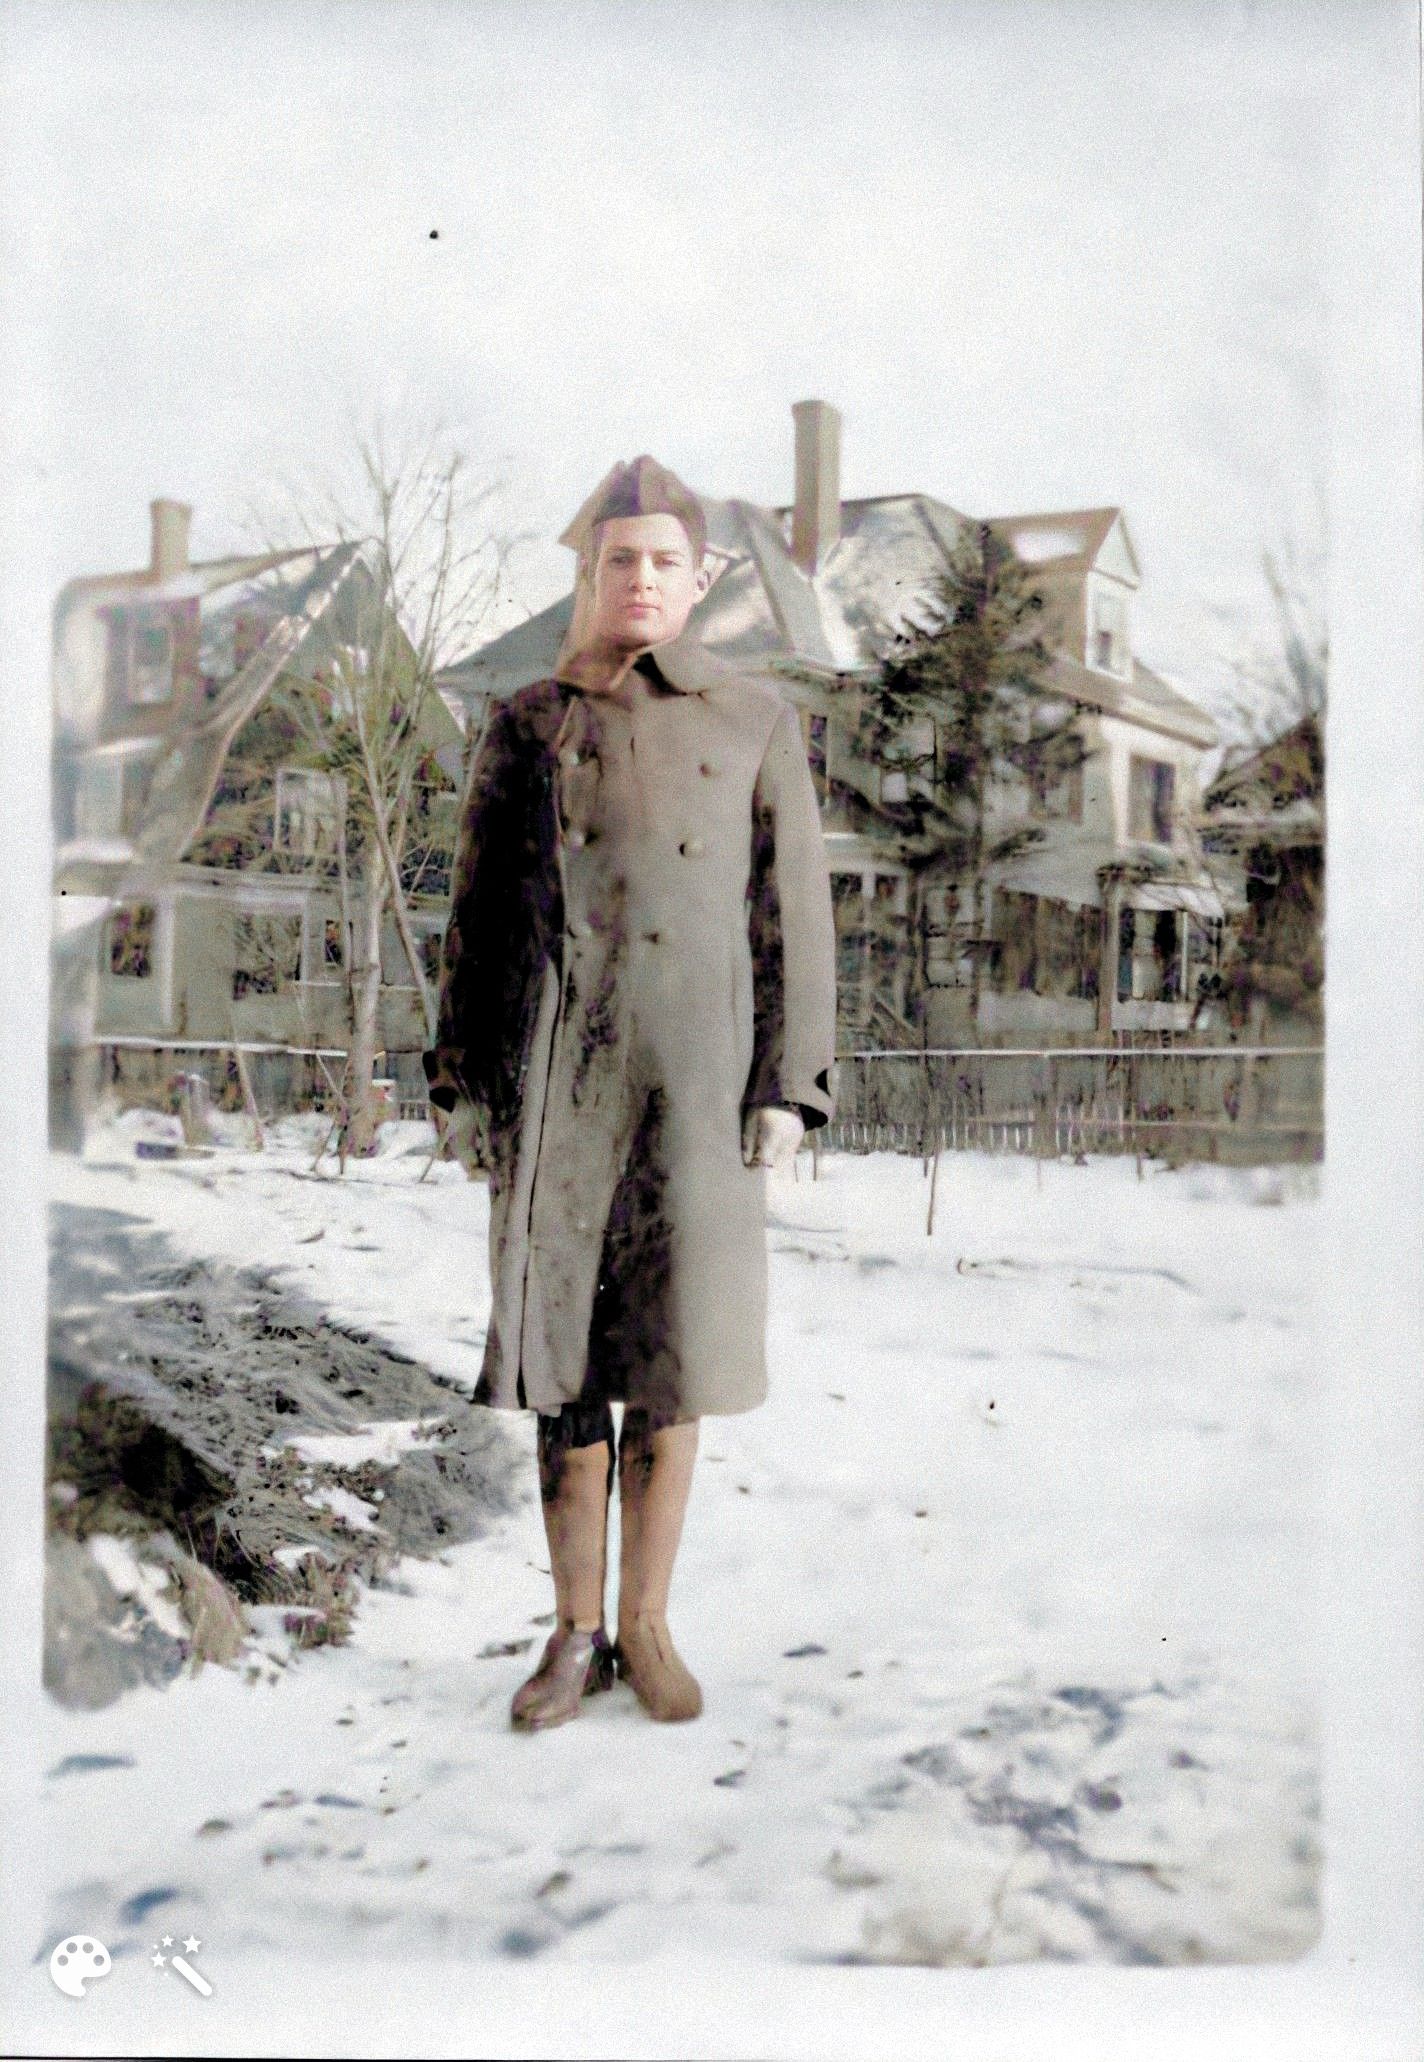 Philip in his uniform